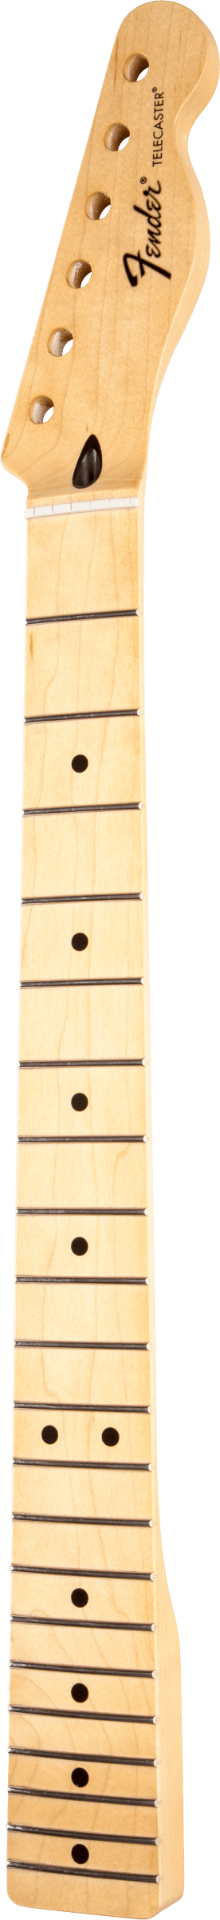 Fender Standard Telecaster Maple Neck